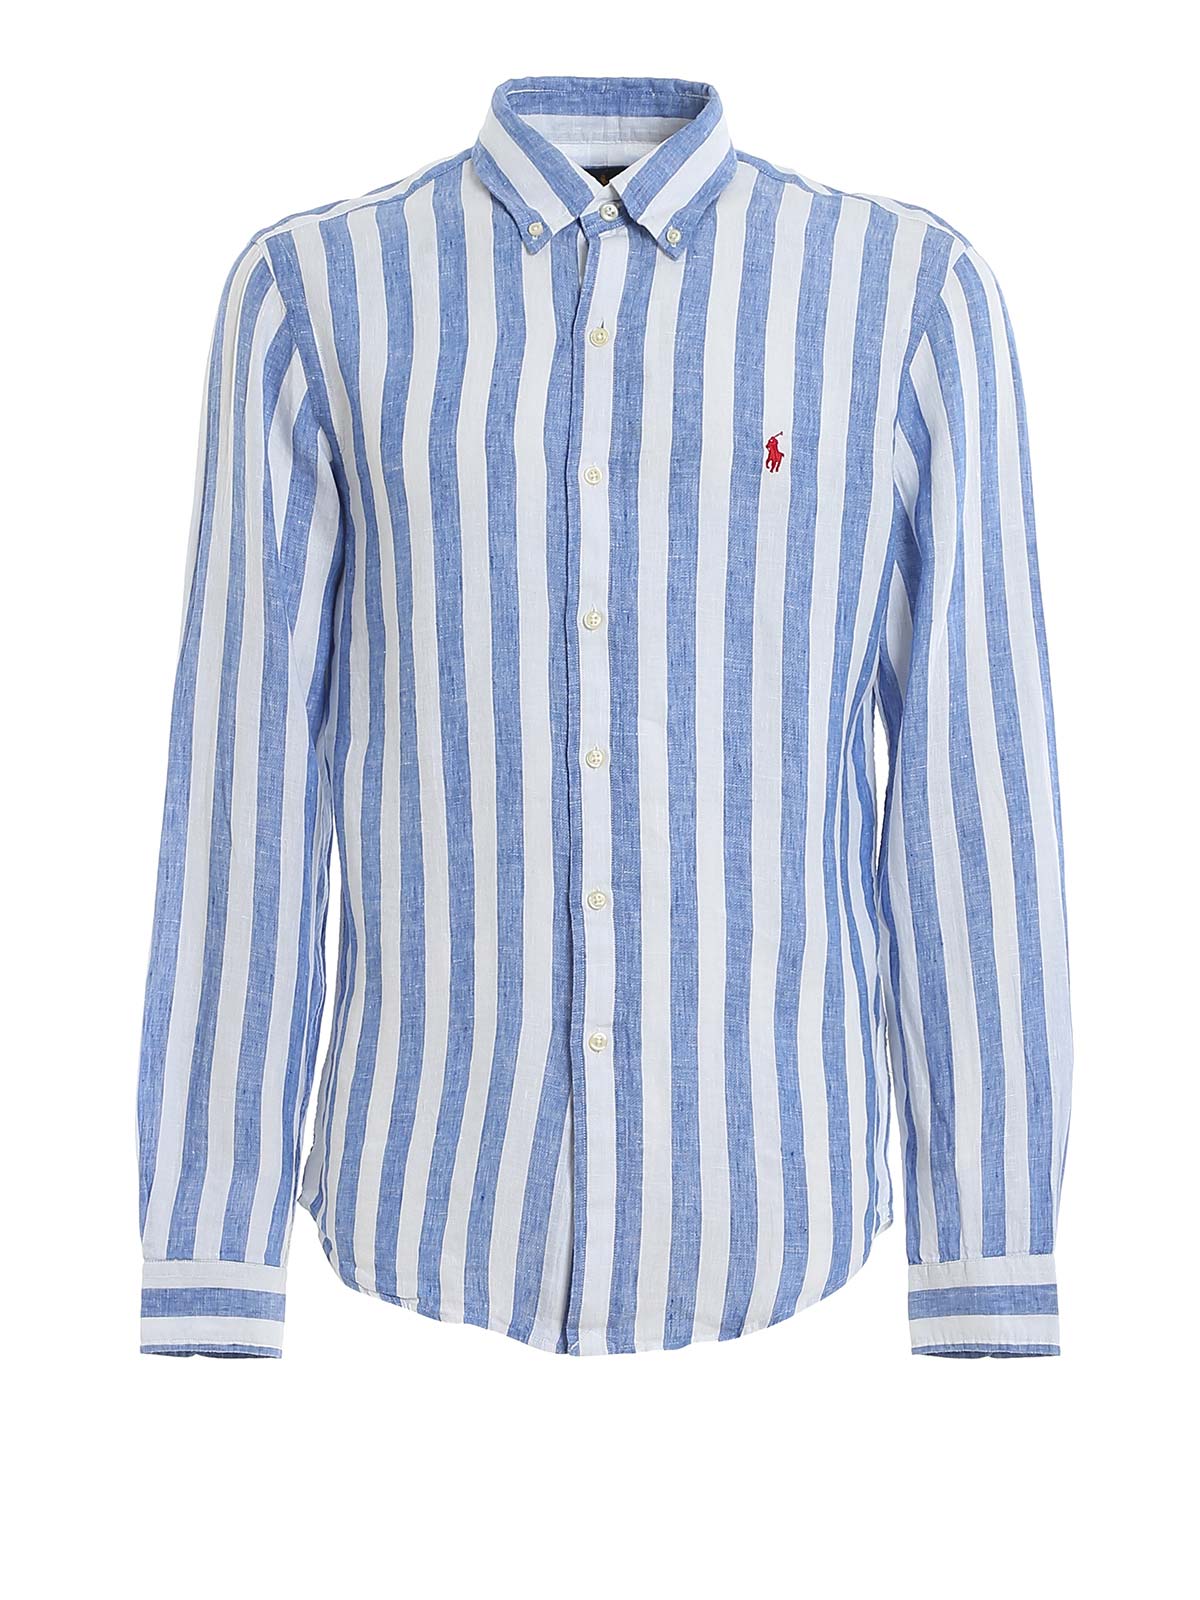 polo ralph lauren blue white striped shirt